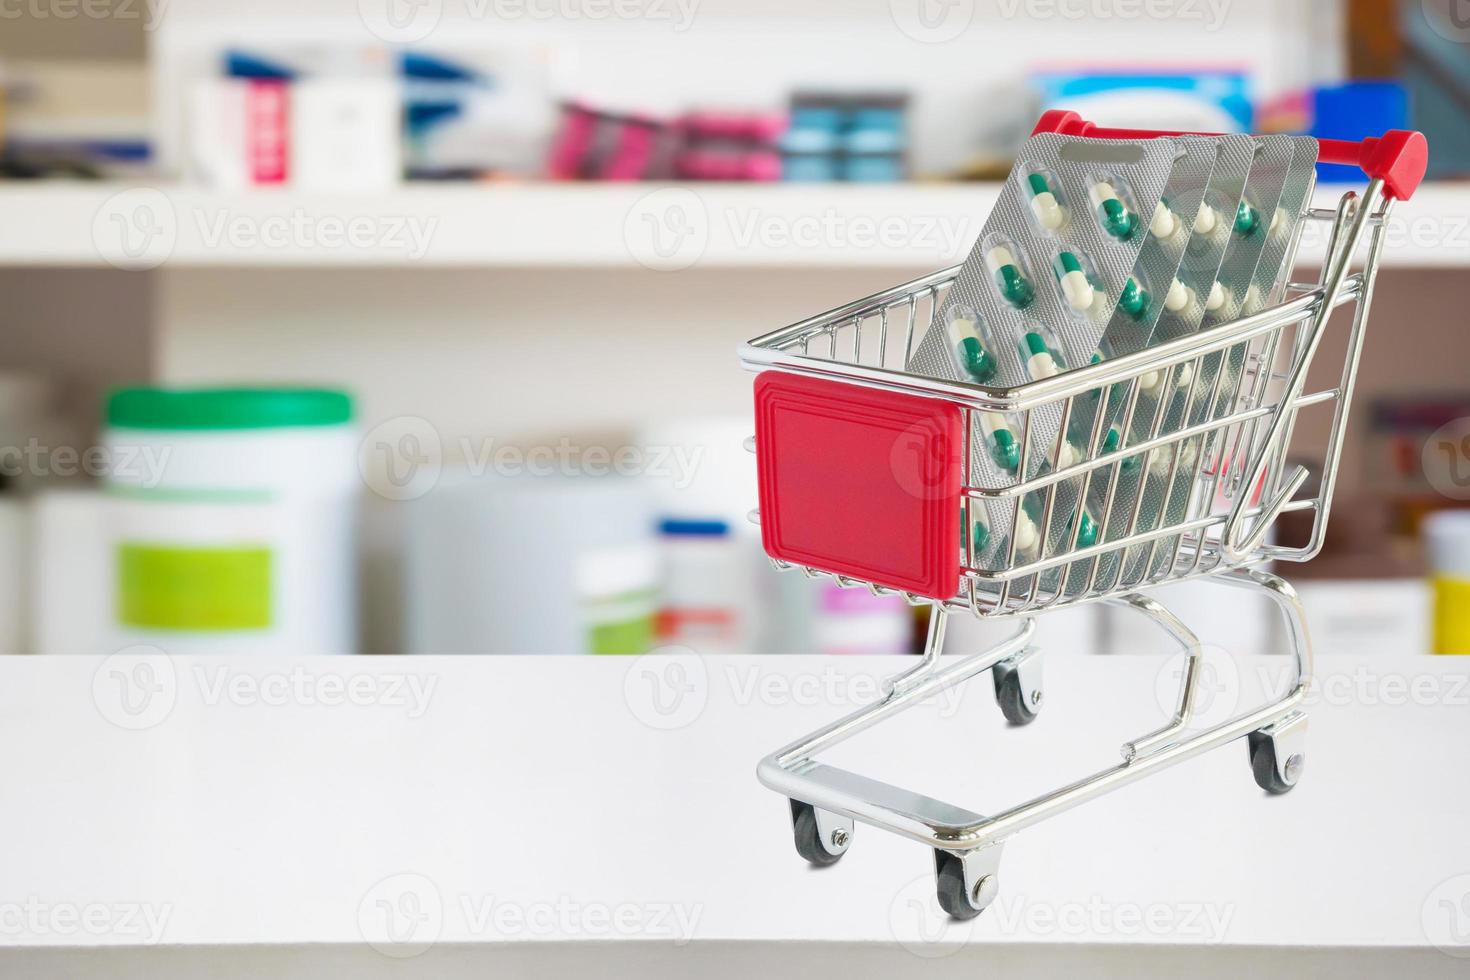 Cápsula de píldoras de medicina en el carrito de compras en el mostrador de la farmacia con estantes de farmacia borrosos fondo desenfocado foto